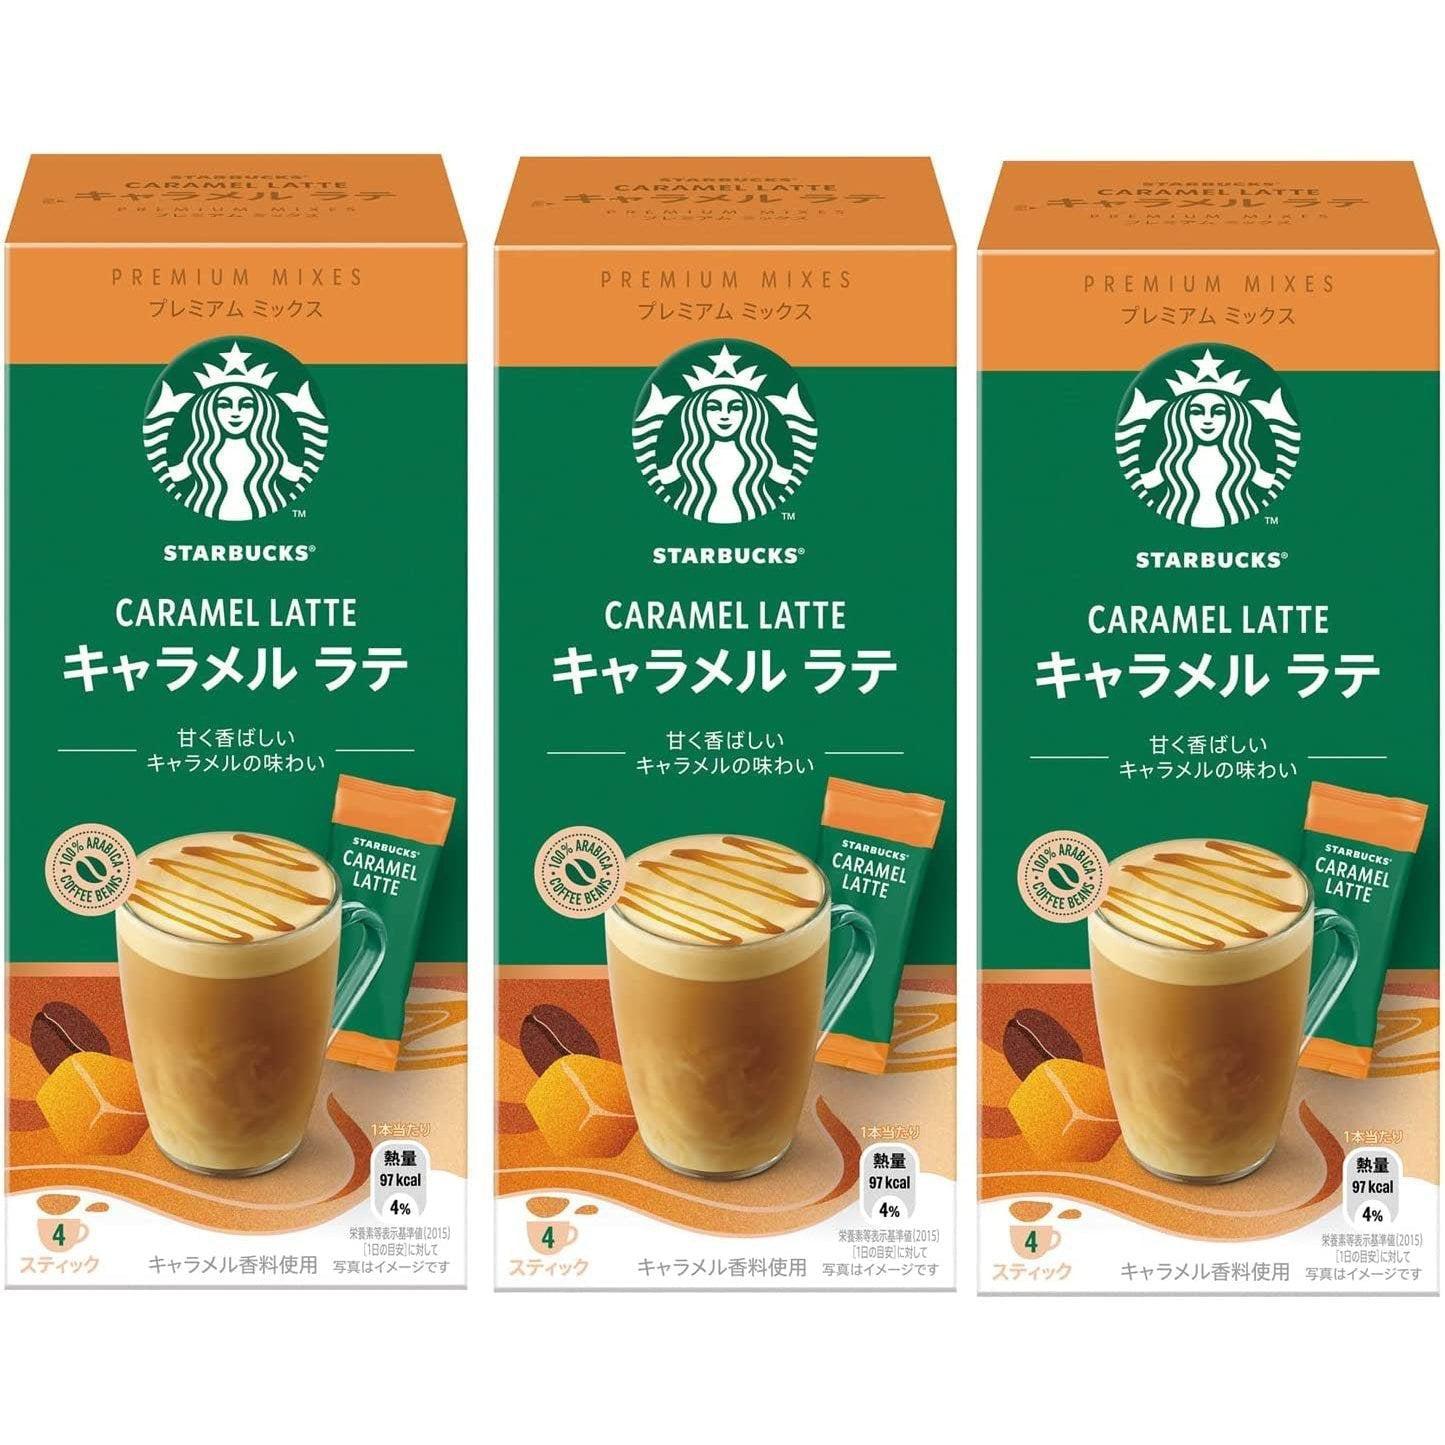 P-1-STBK-CRMLAT-4:3-Starbucks Caramel Latte Premium Mixes (Pack of 3).jpg